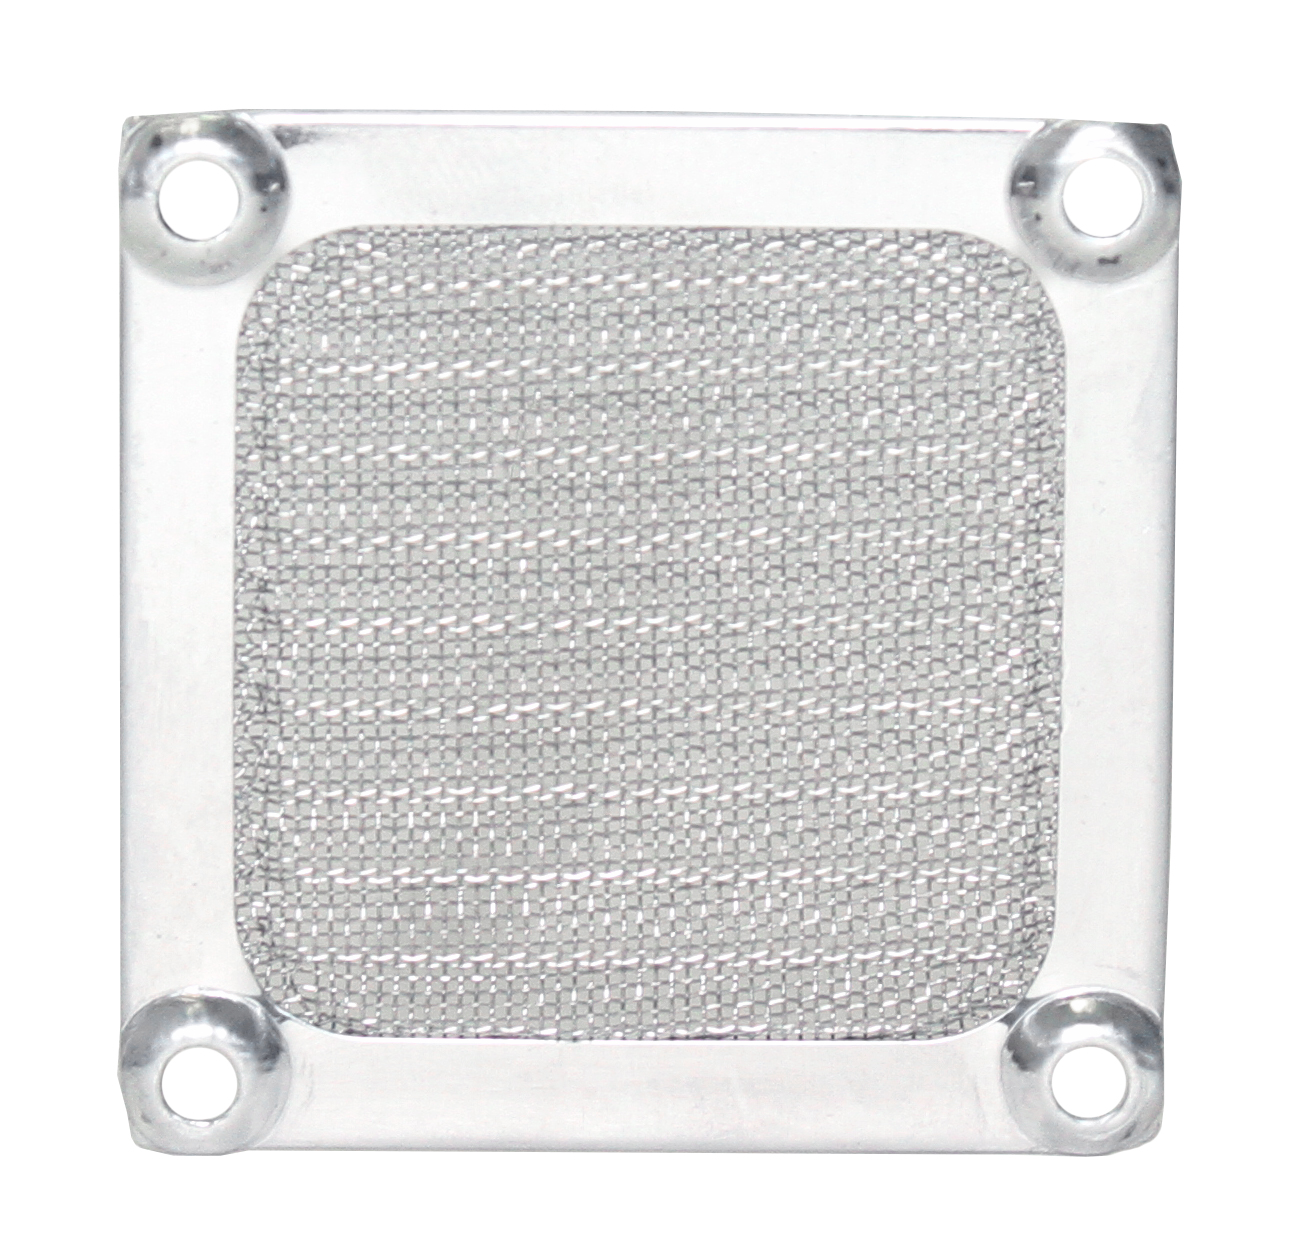 Купить алюминиевую решетку. K-mf06e-4ha-fb. Решетка k-pf12j-4pa с фильтром для вентилятора 120*120мм. Решетка алюминиевая. Решетка алюминий.